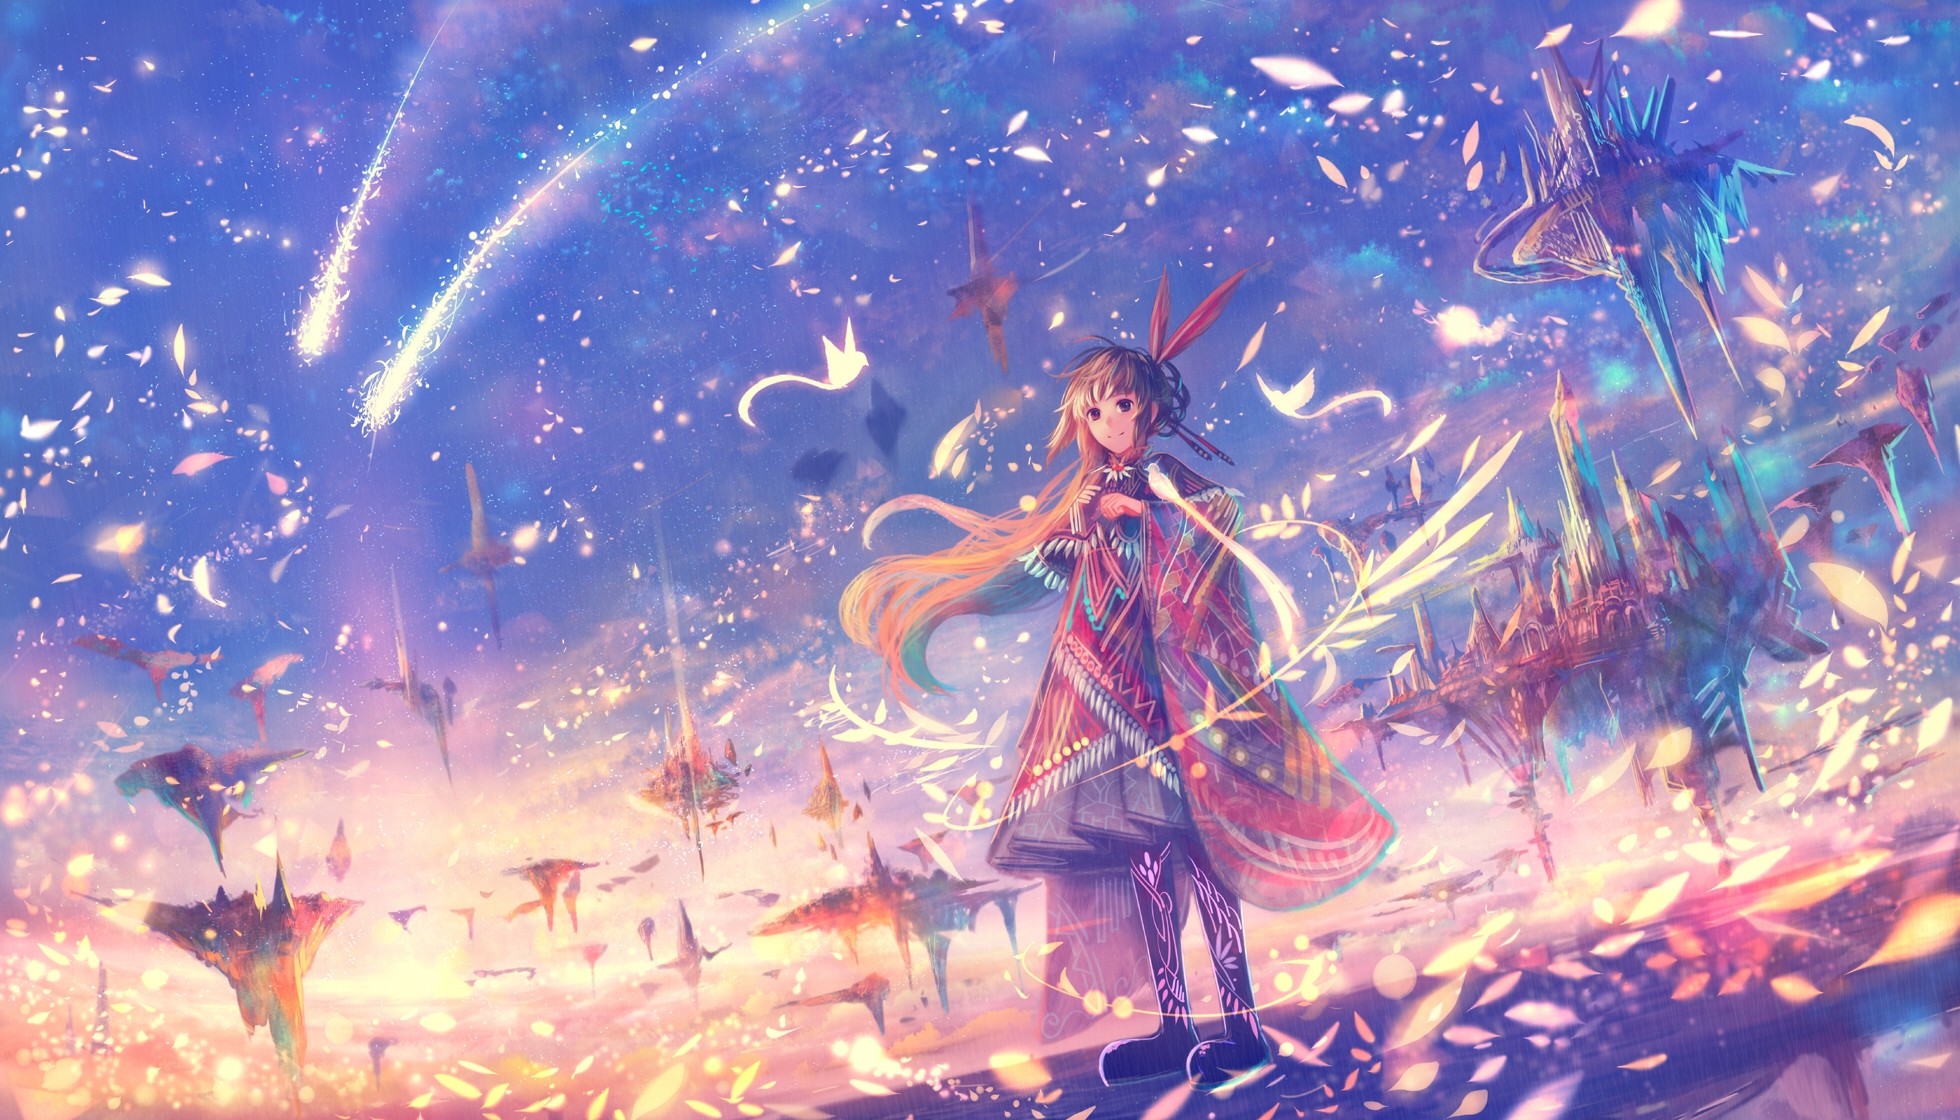 anime fantasy wallpaper,cg kunstwerk,illustration,himmel,erfundener charakter,kunst